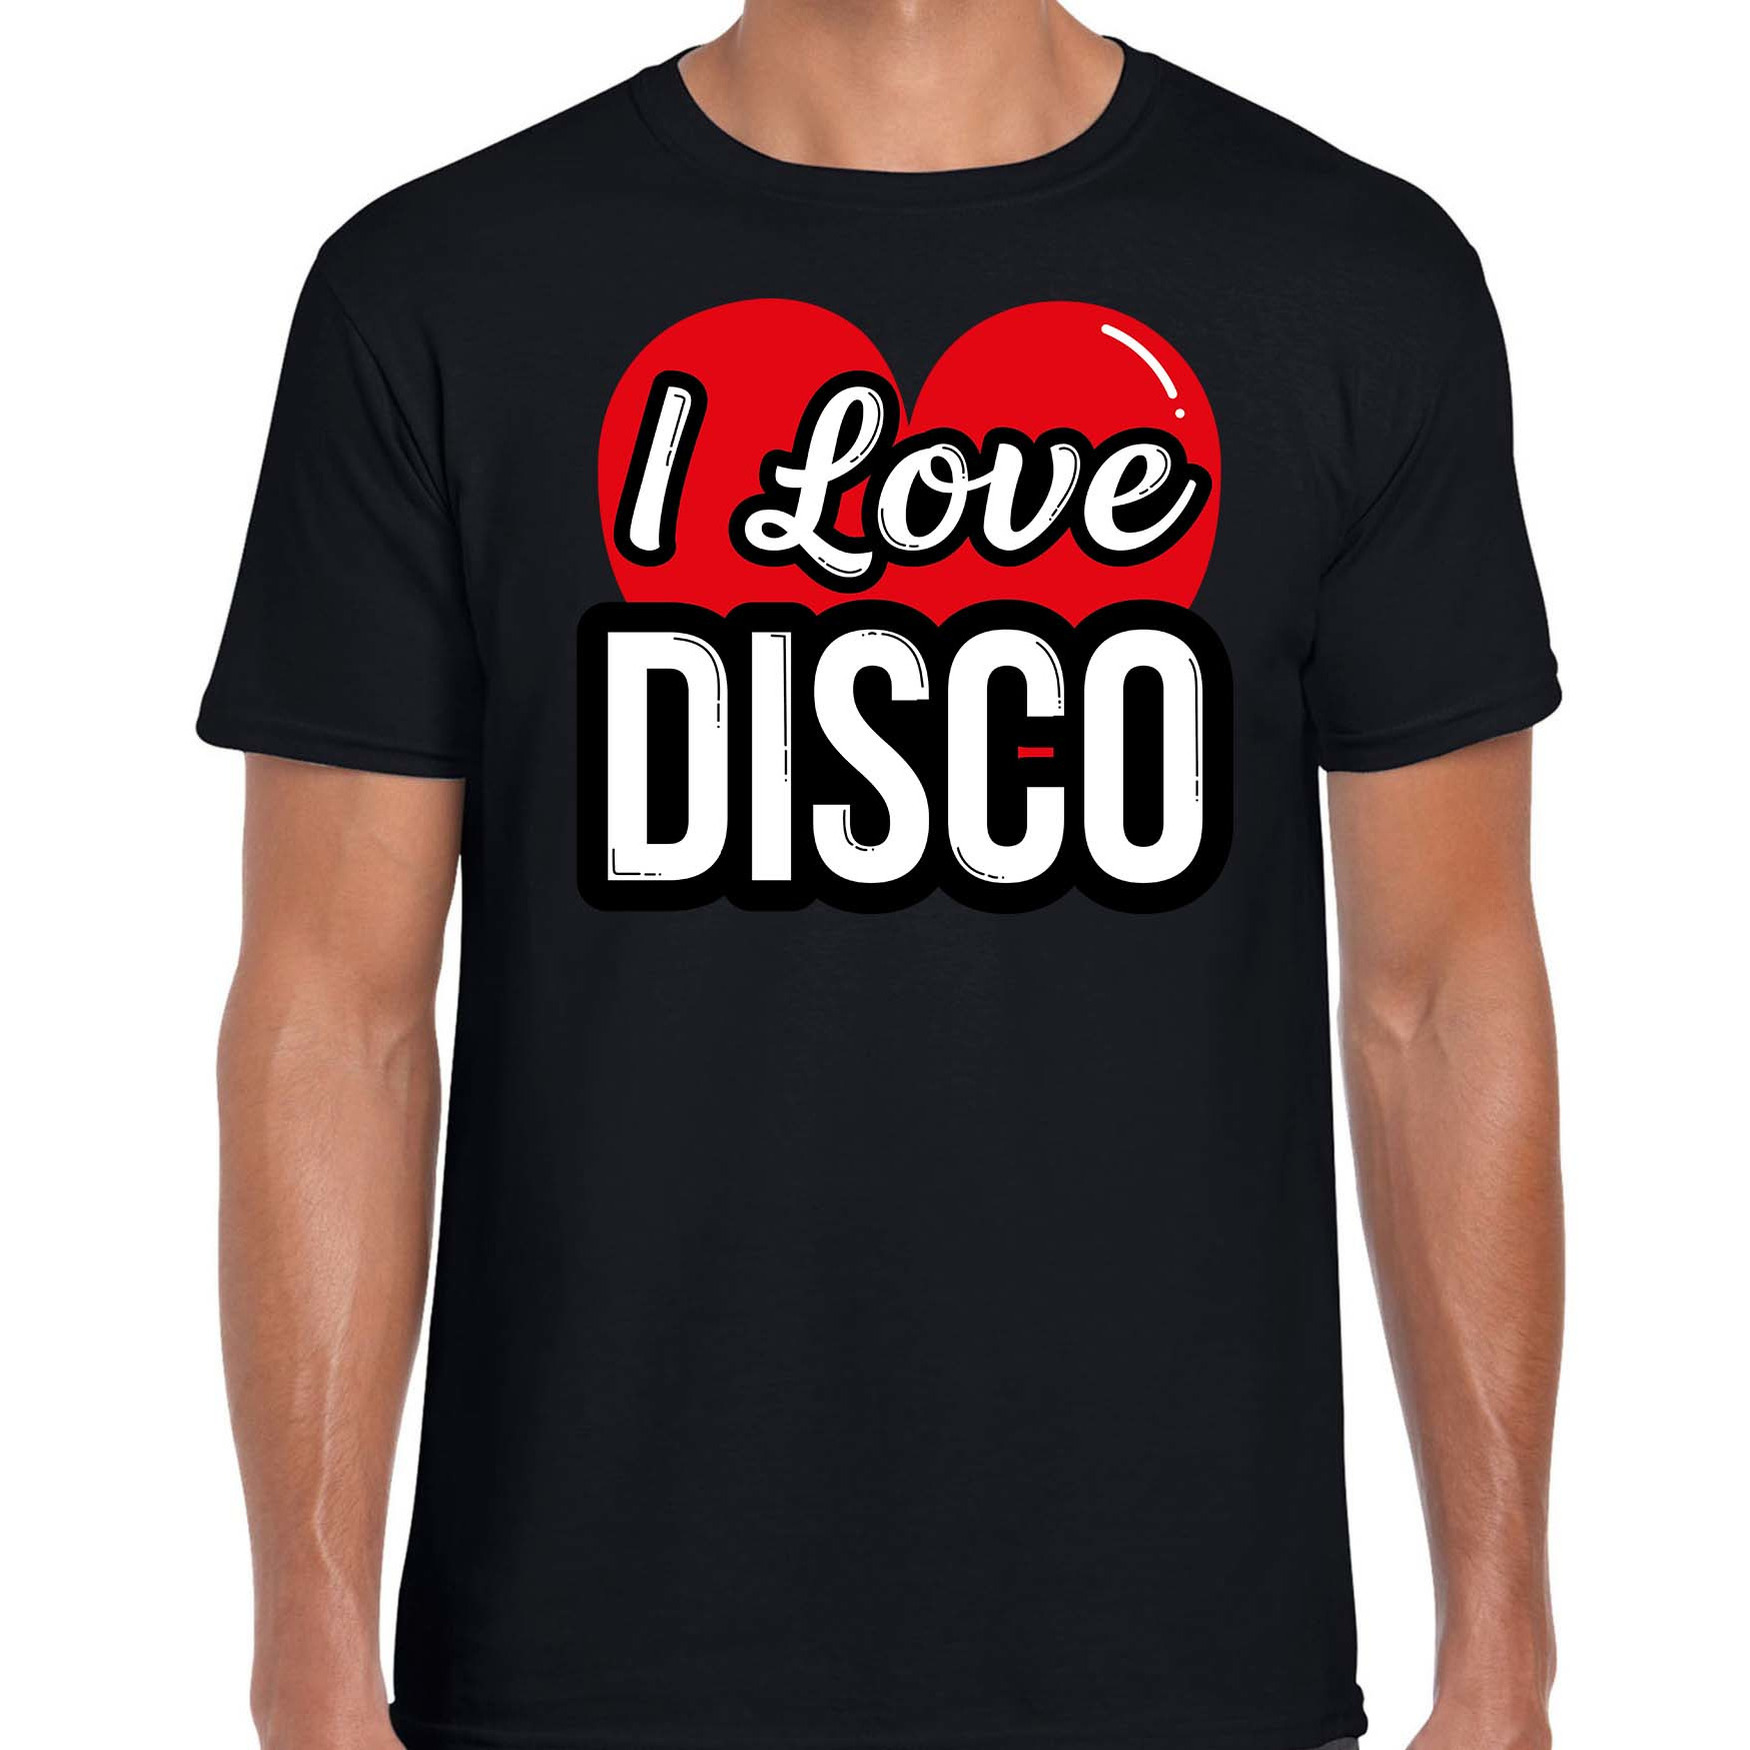 I love disco verkleed t-shirt zwart voor heren Disco party verkleed outfit